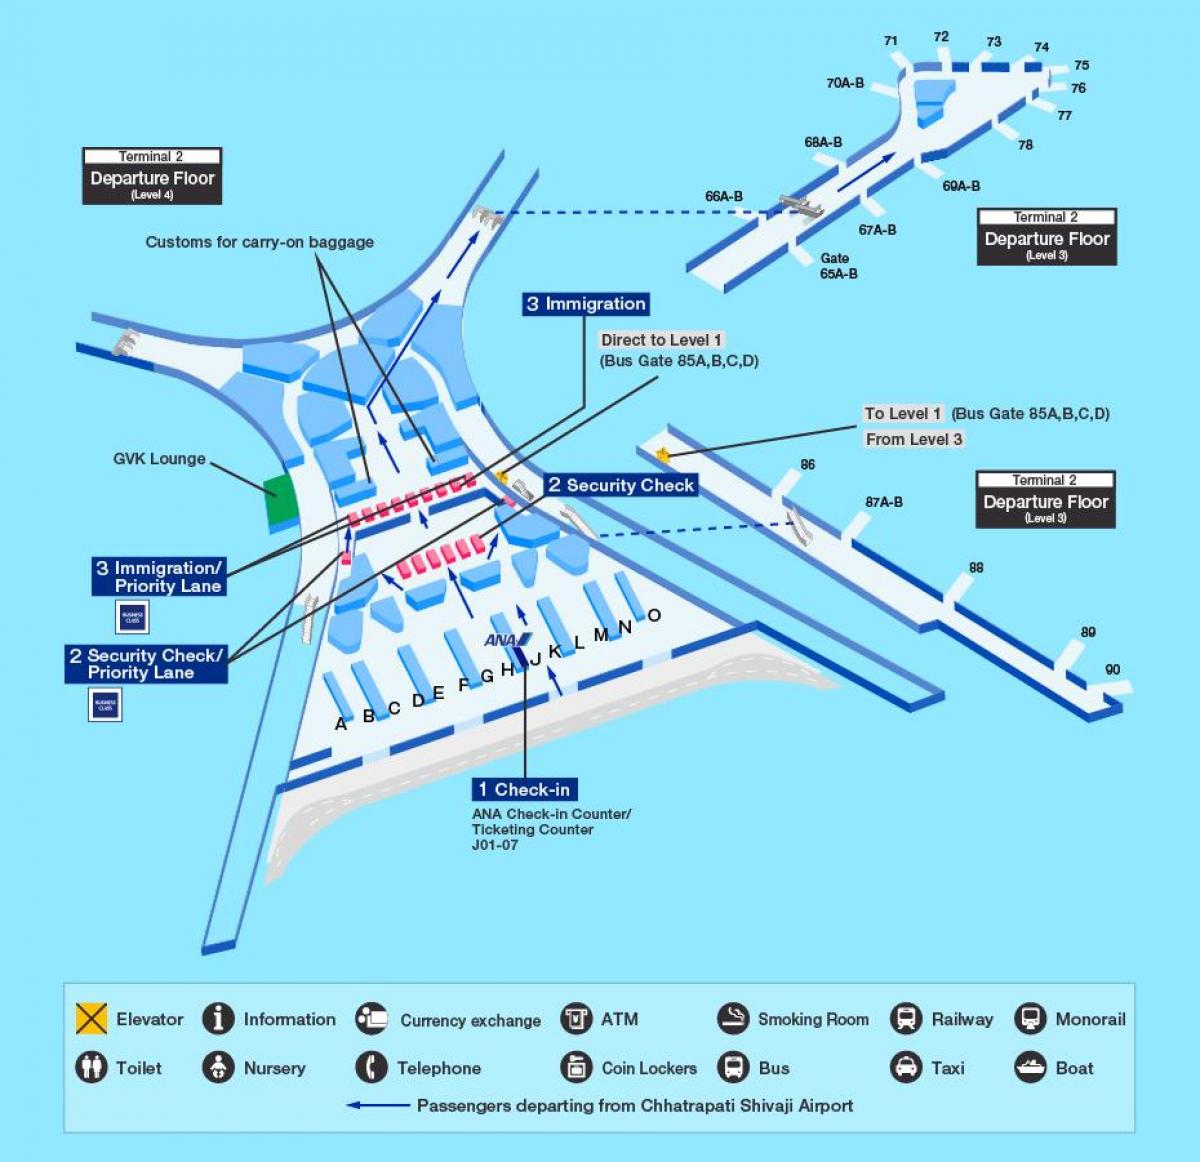 ムンバイ国際空港第2旅客ターミナルビルの地図